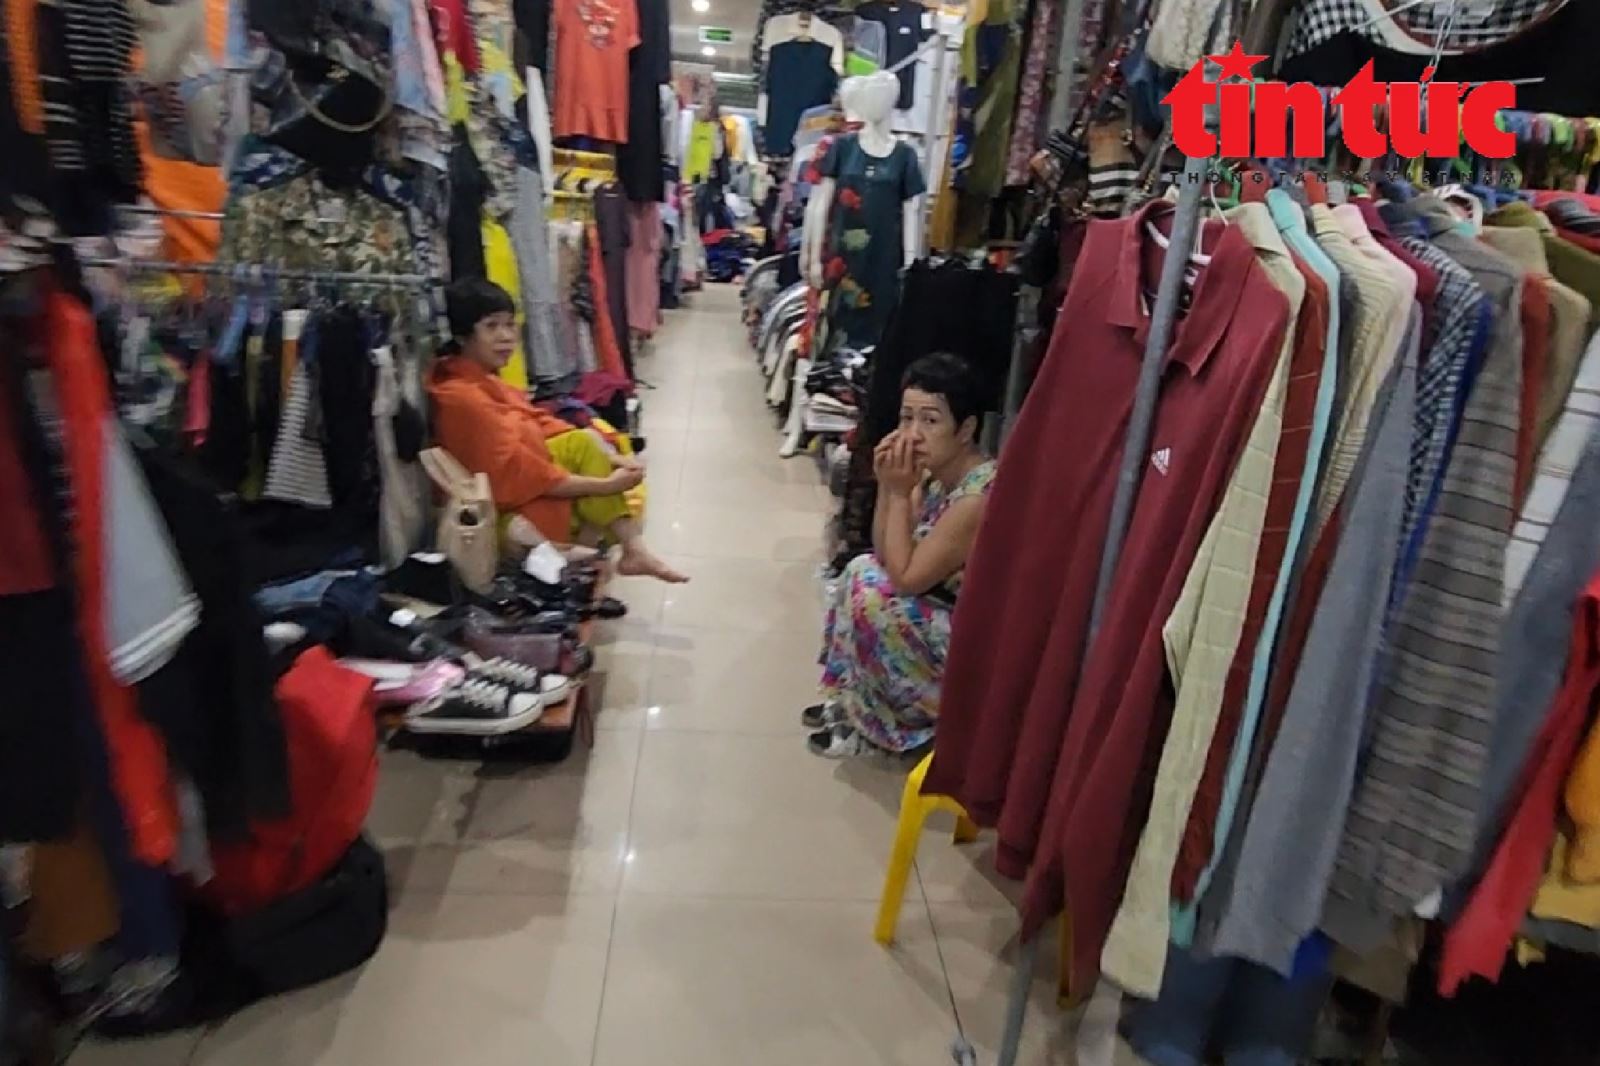 'Kỳ lạ' chợ trung tâm Hà Nội chỉ thấy người bán, không thấy người mua